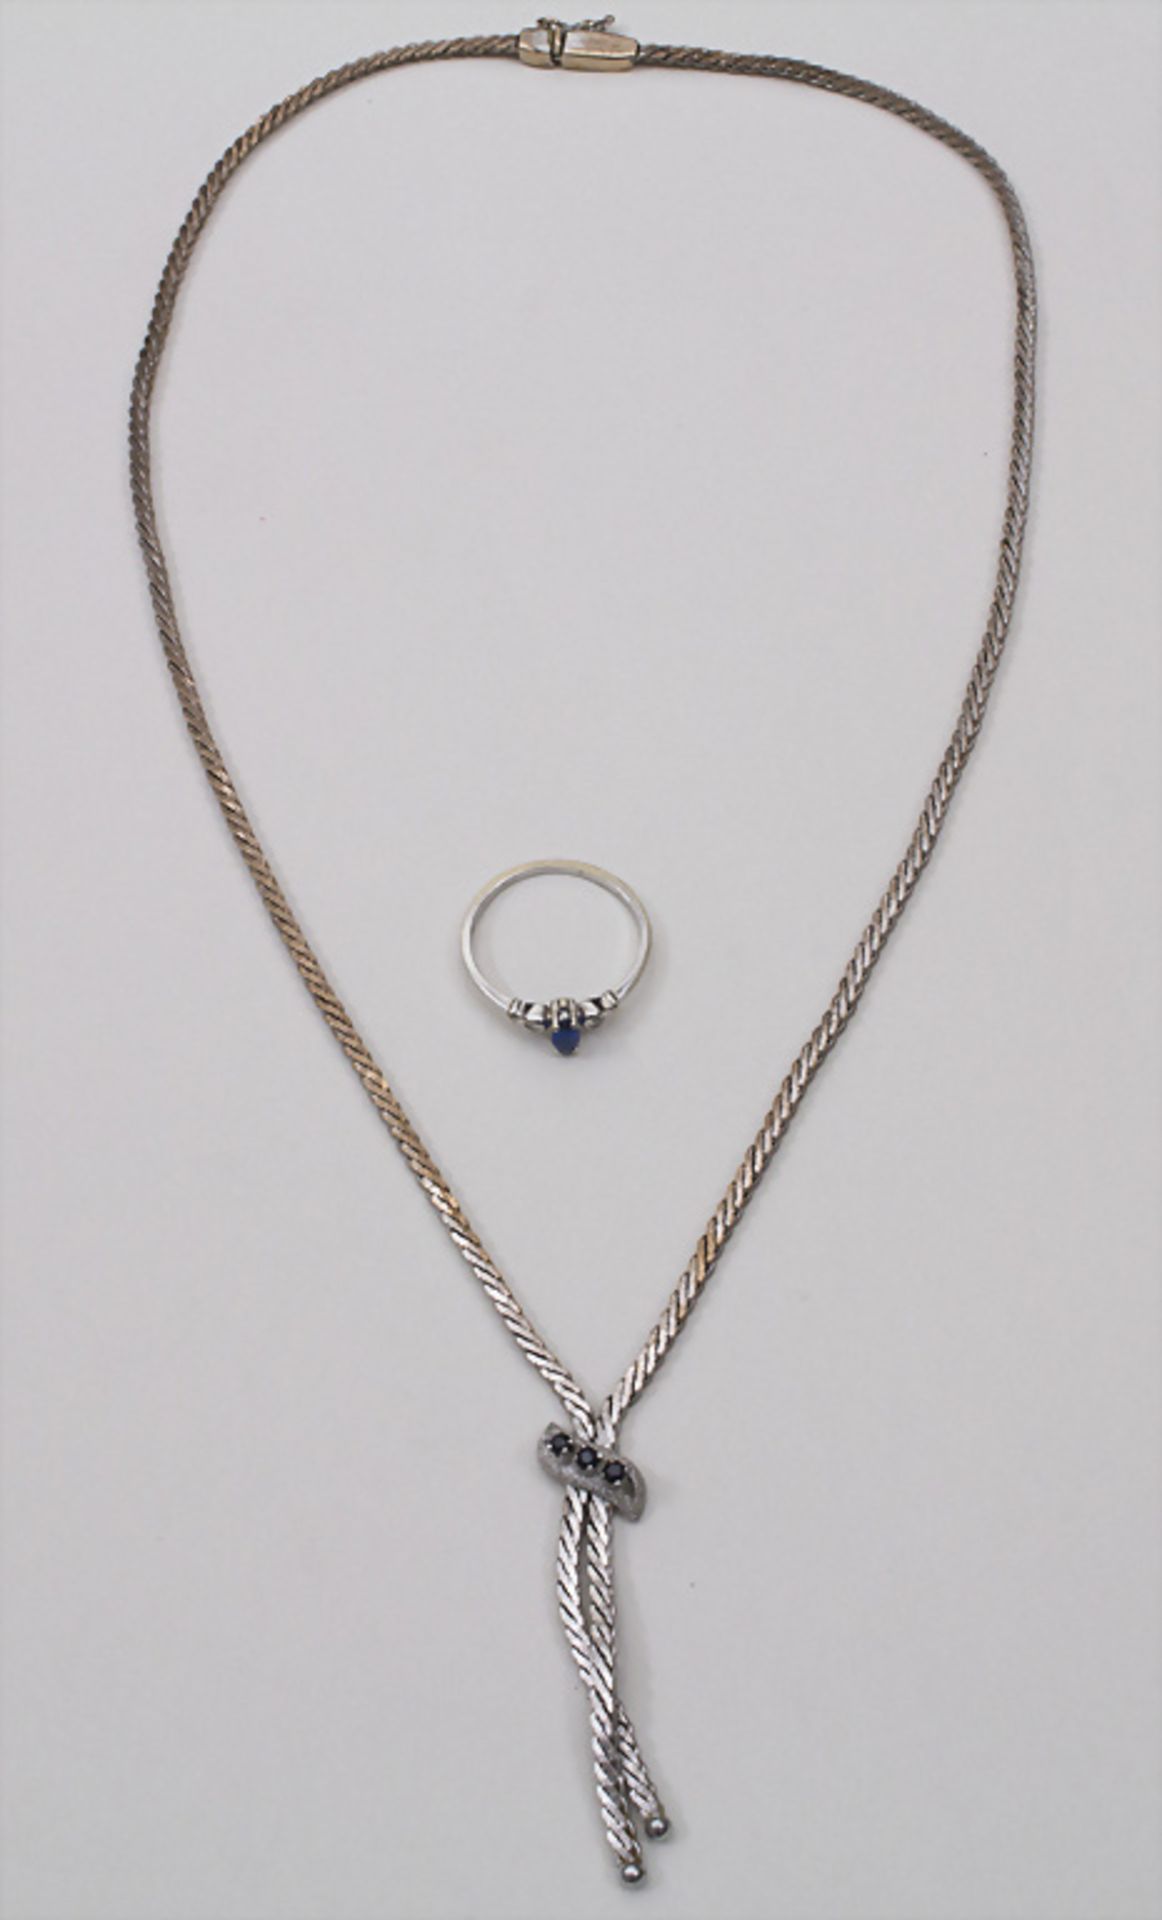 Weißgold Collier und Ring / White gold necklace and ringCollier WG 333/000, blauer Farbstein,Ring: